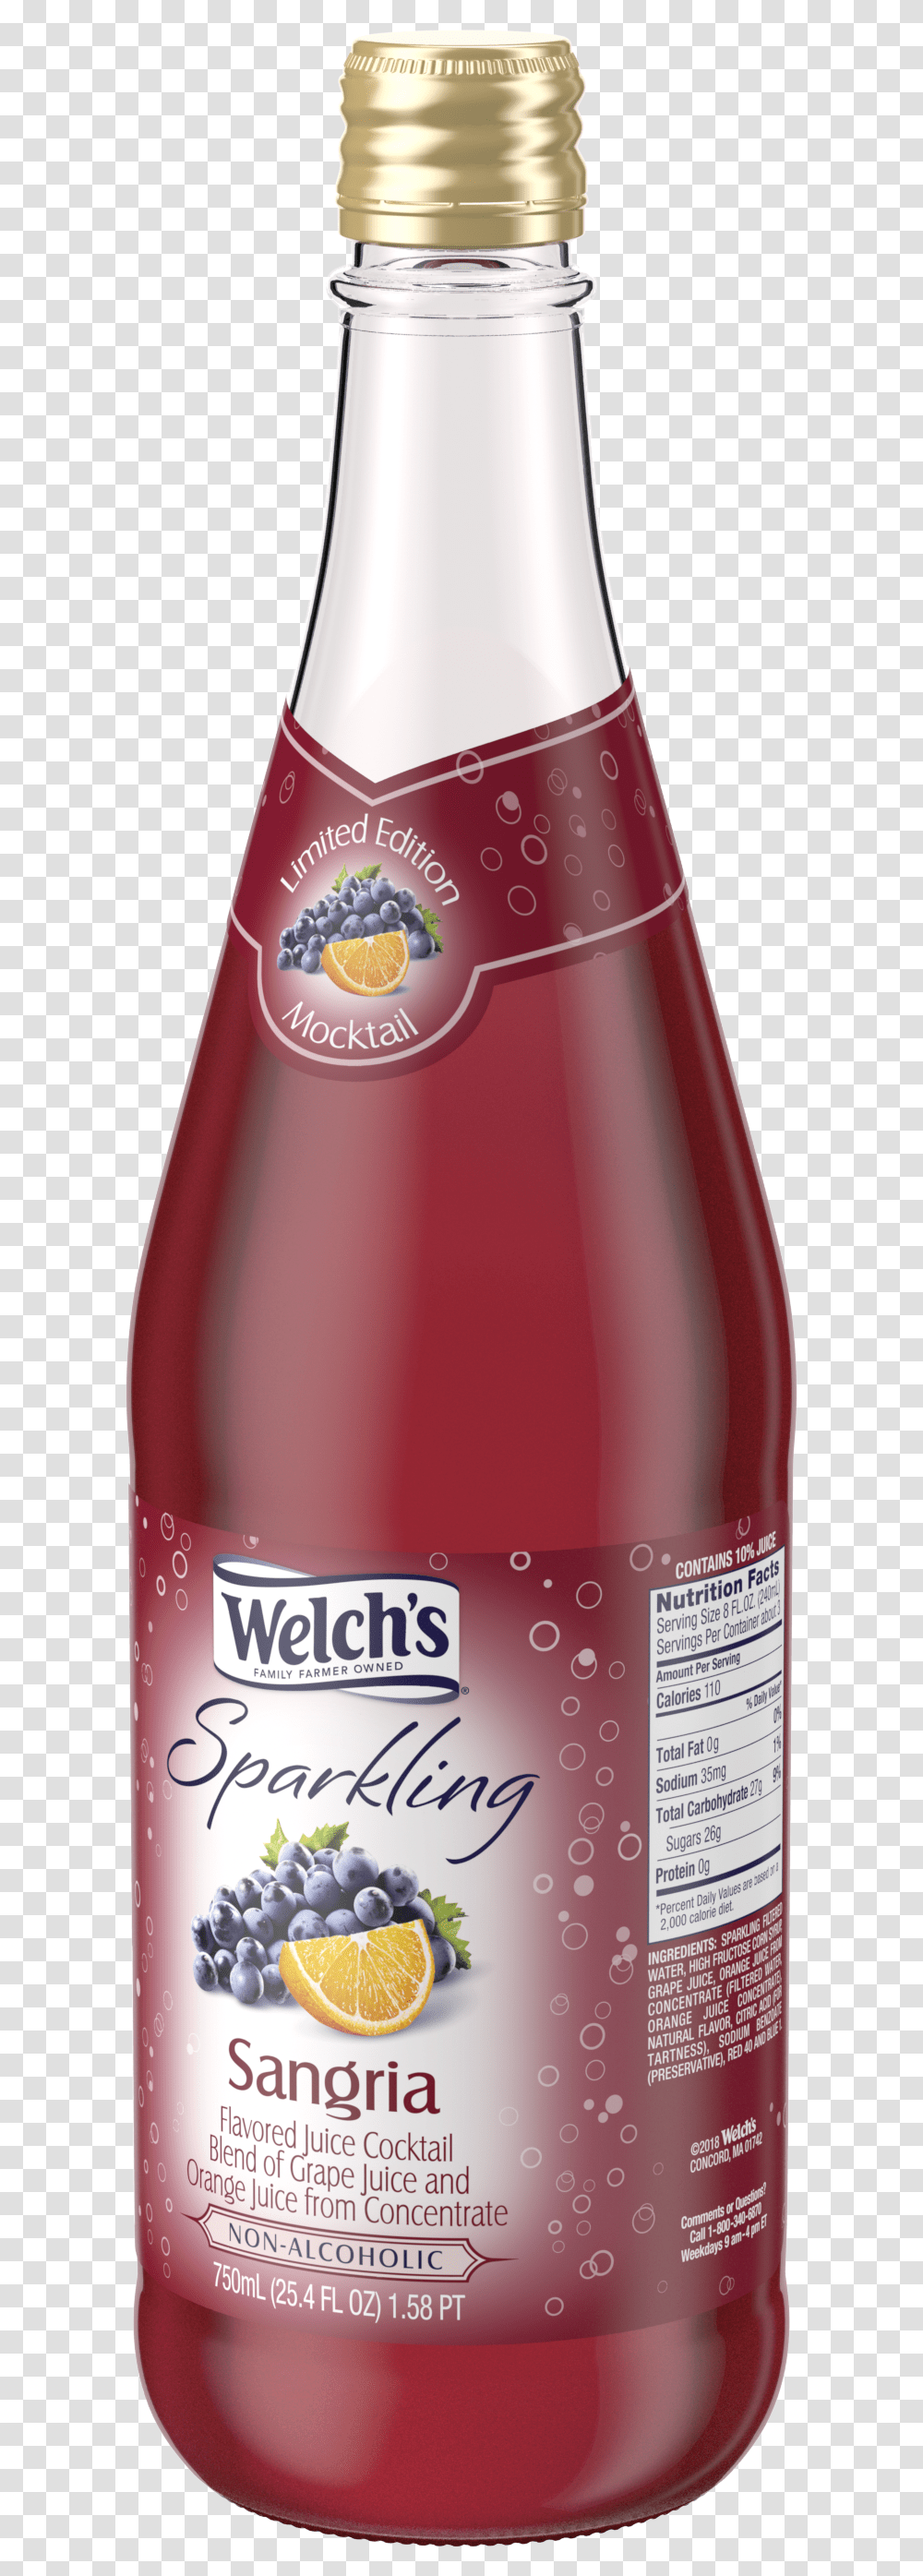 Welch S Sparkling Sangria, Bottle, Beverage, Alcohol, Wine Transparent Png